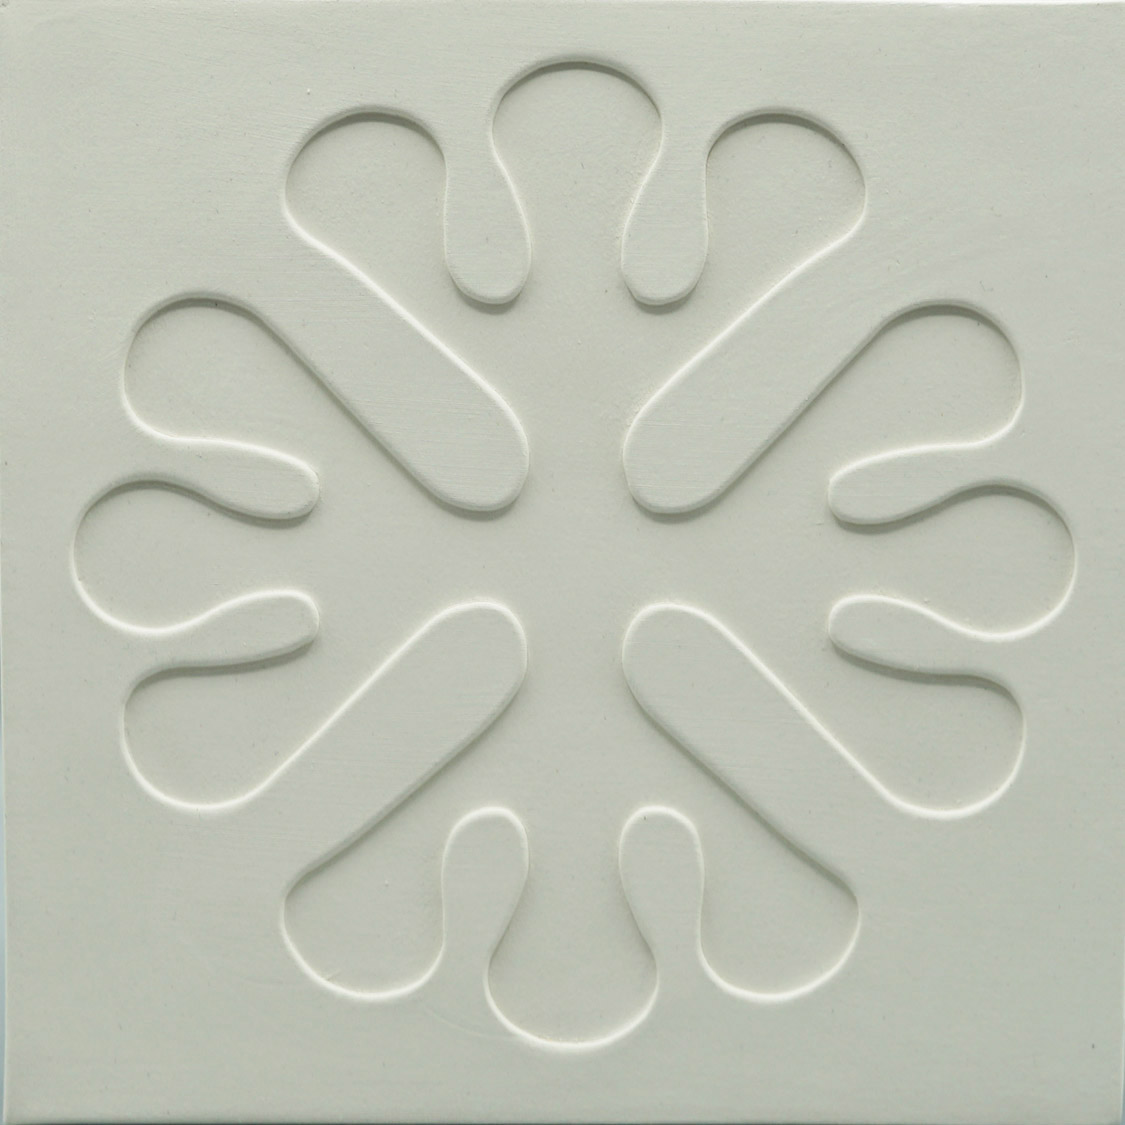 Thumbnail of a symmetrical flower shape for hostel.